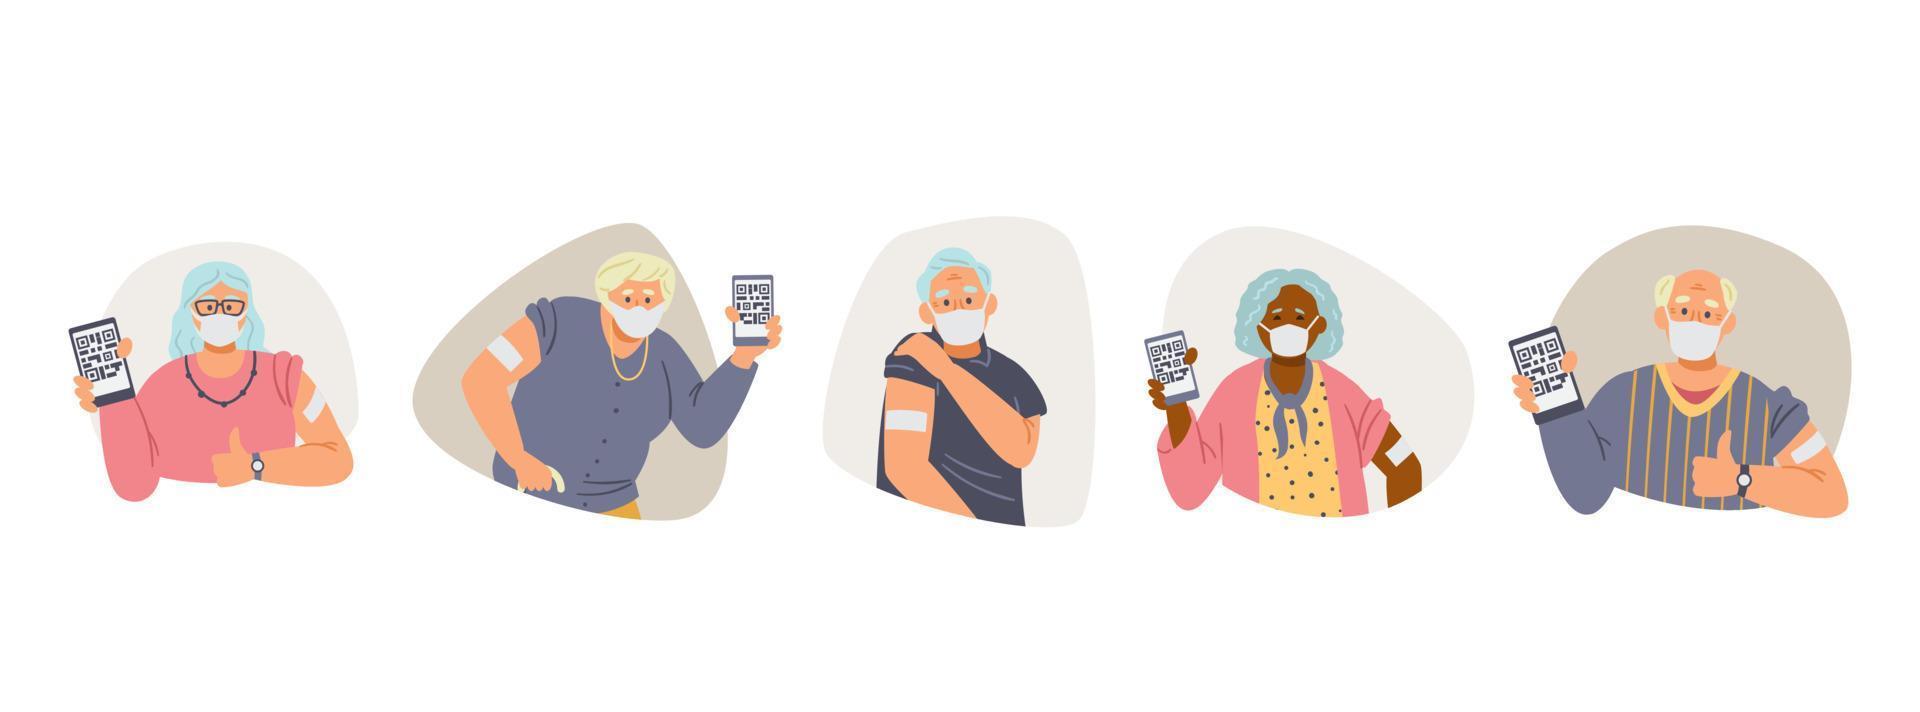 coleção de vetores plana de idosos vacinados. homens e mulheres idosos com máscaras faciais mostram as mãos com remendo segurando telefones com passaporte de saúde.